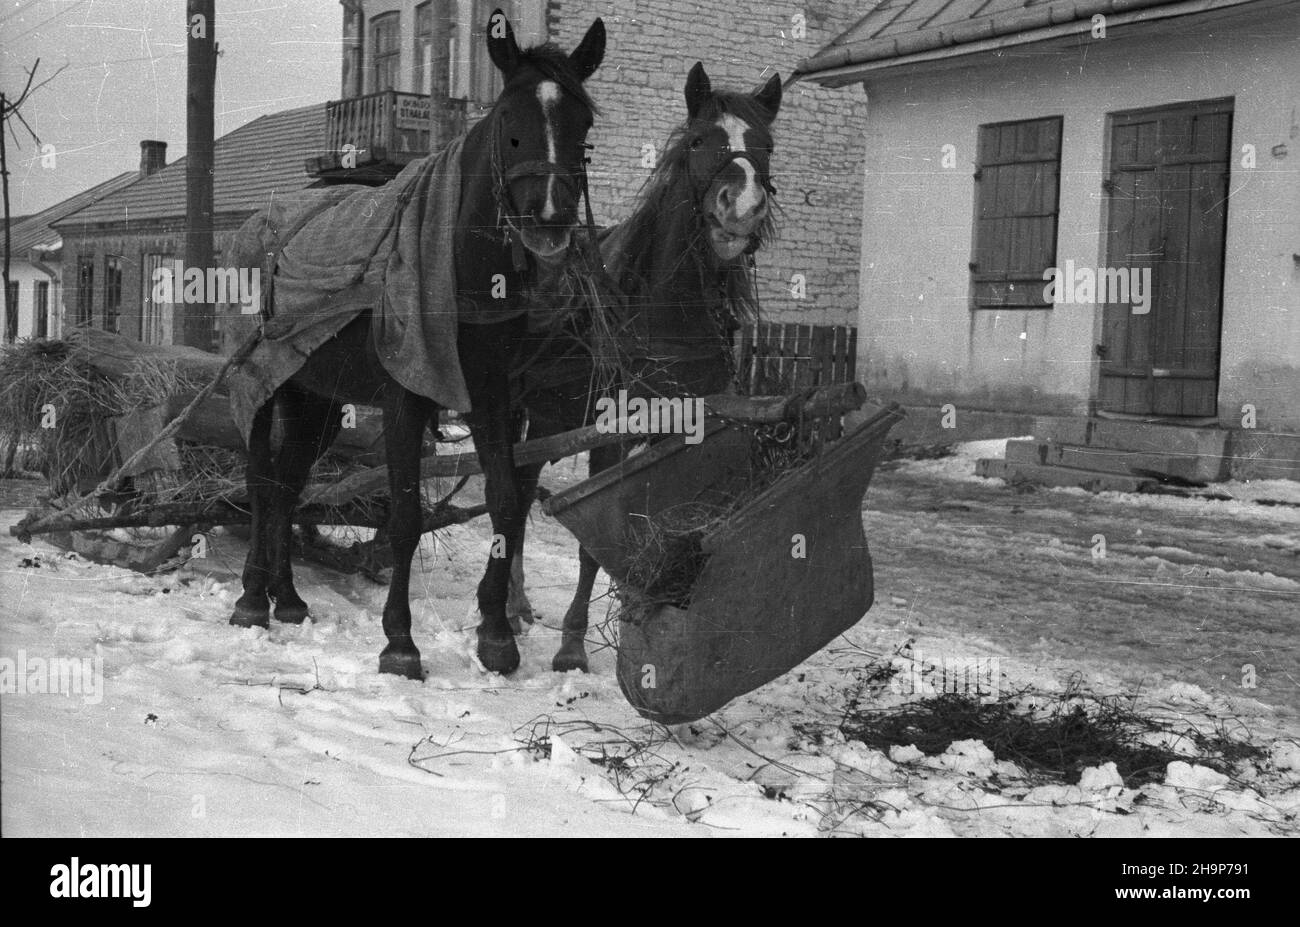 Gorzków ko³o Krasnegostawu, 1949-02. Konie. msa  PAP    Dok³adny dzieñ wydarzenia nieustalony.      Gorzkow near Krasnystaw, Feb. 1949. Horses.  msa  PAP Stock Photo